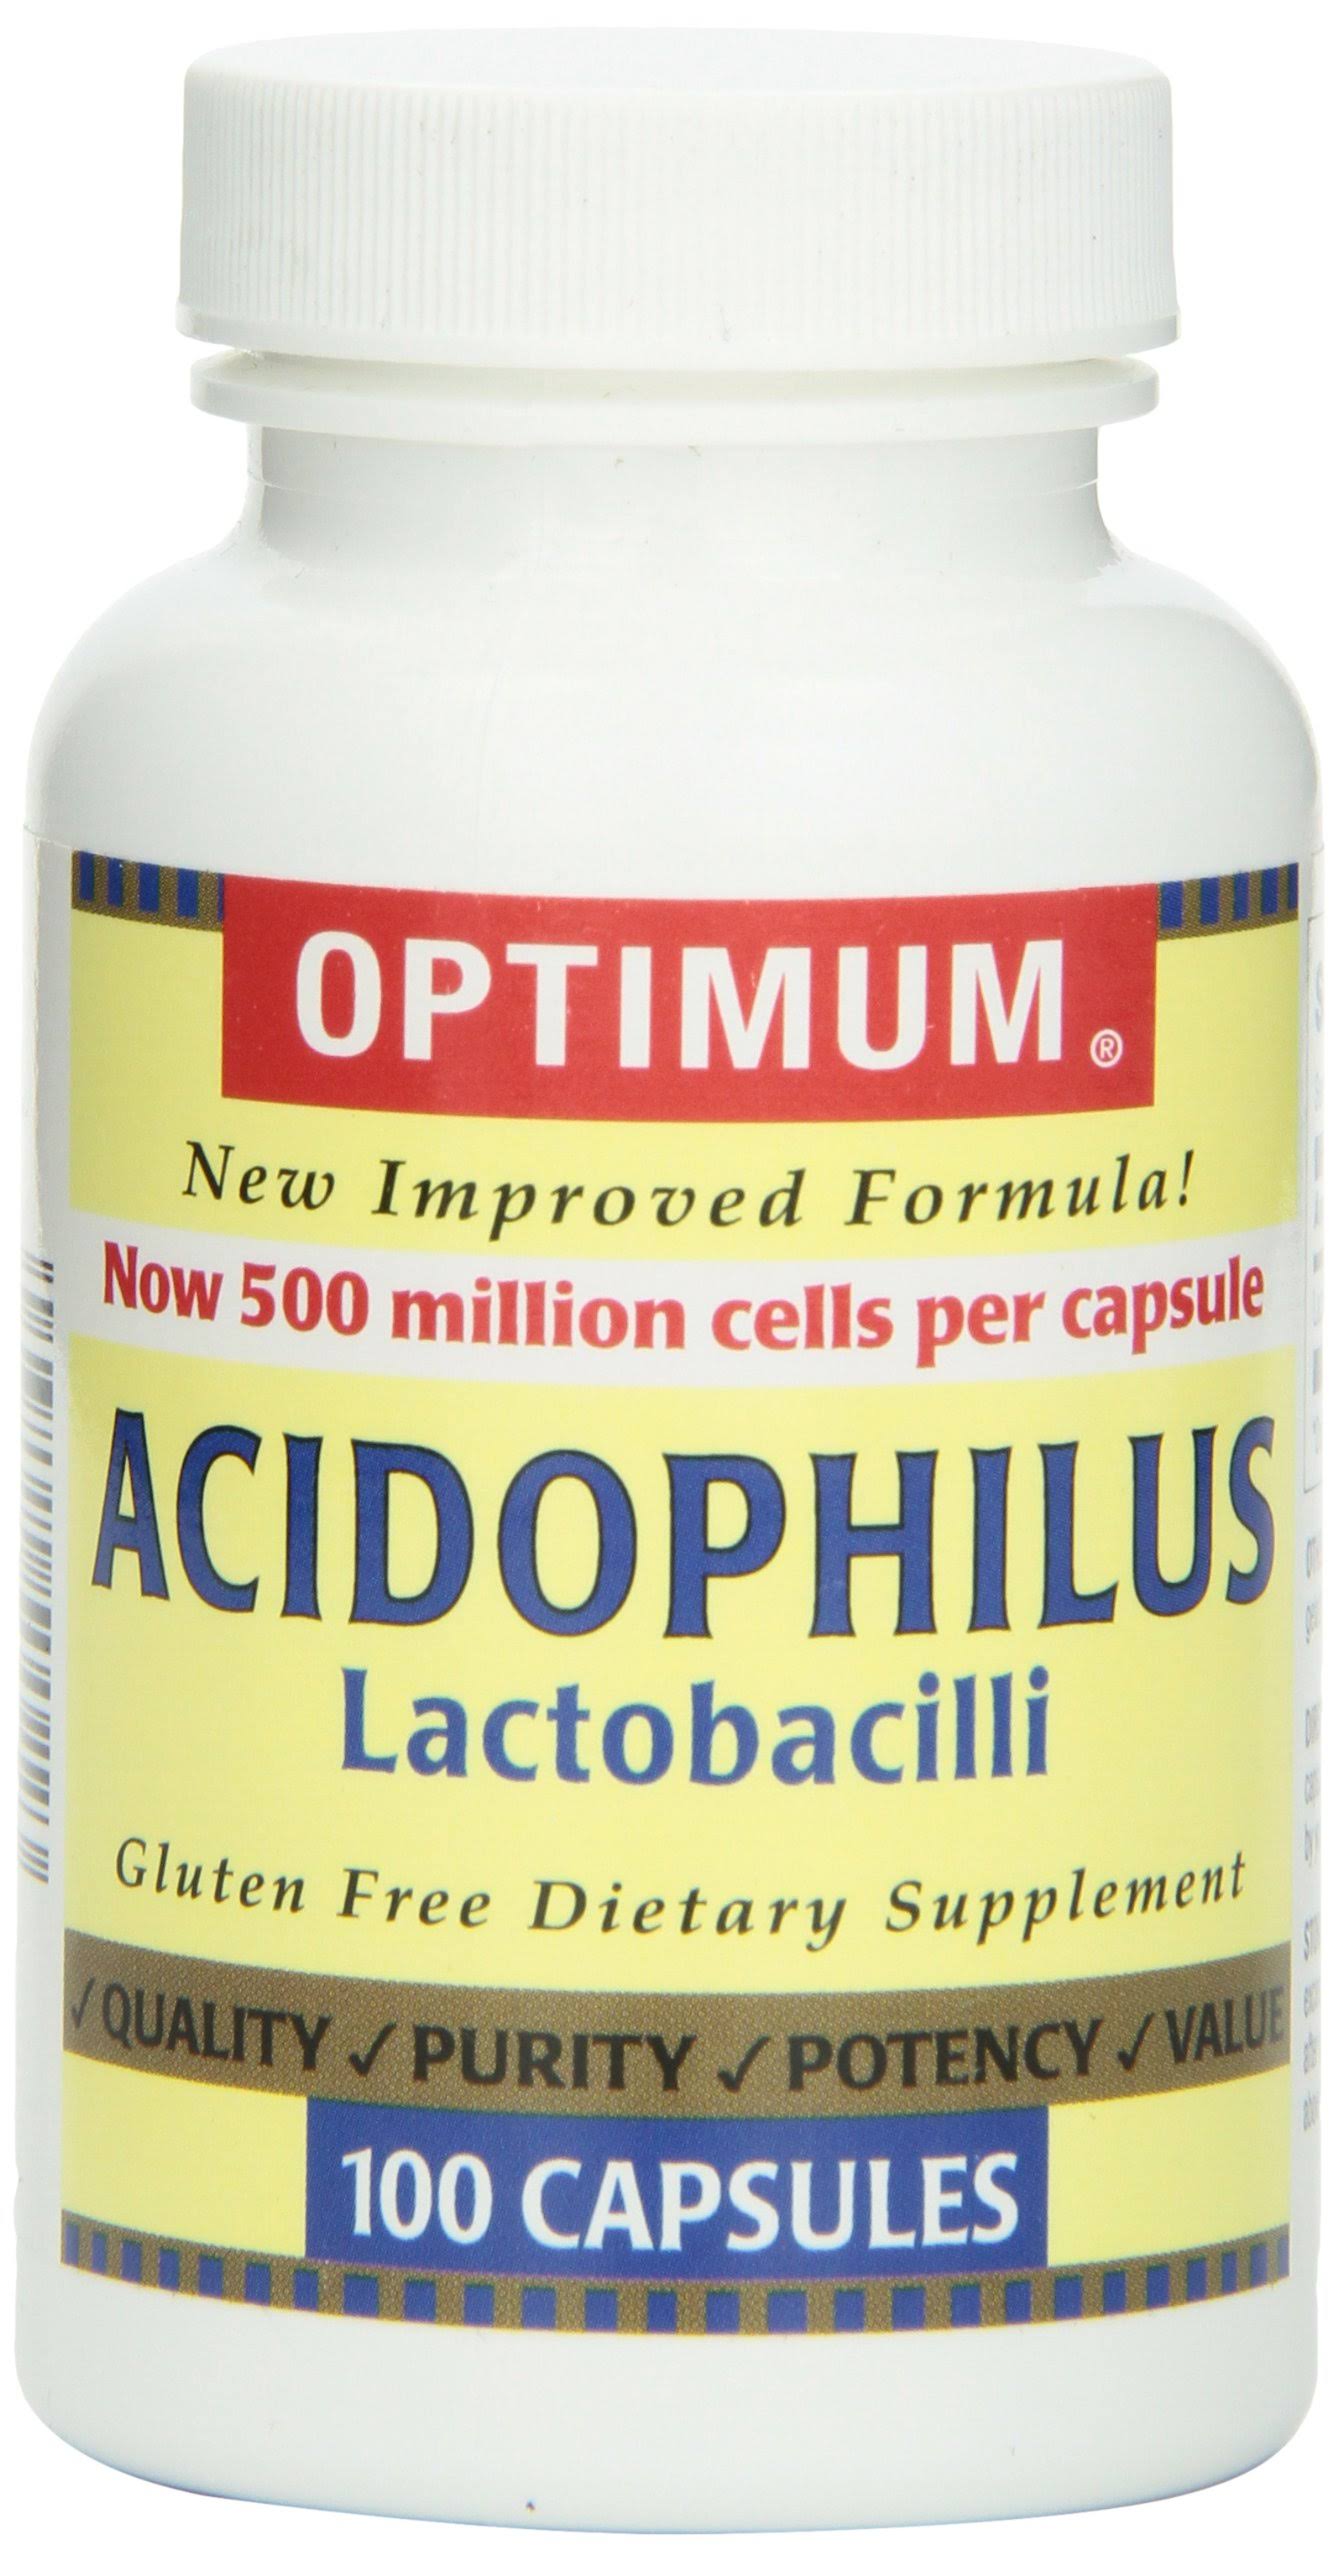 Optimum Acidophilus Lactobacilli Supplement - 100ct